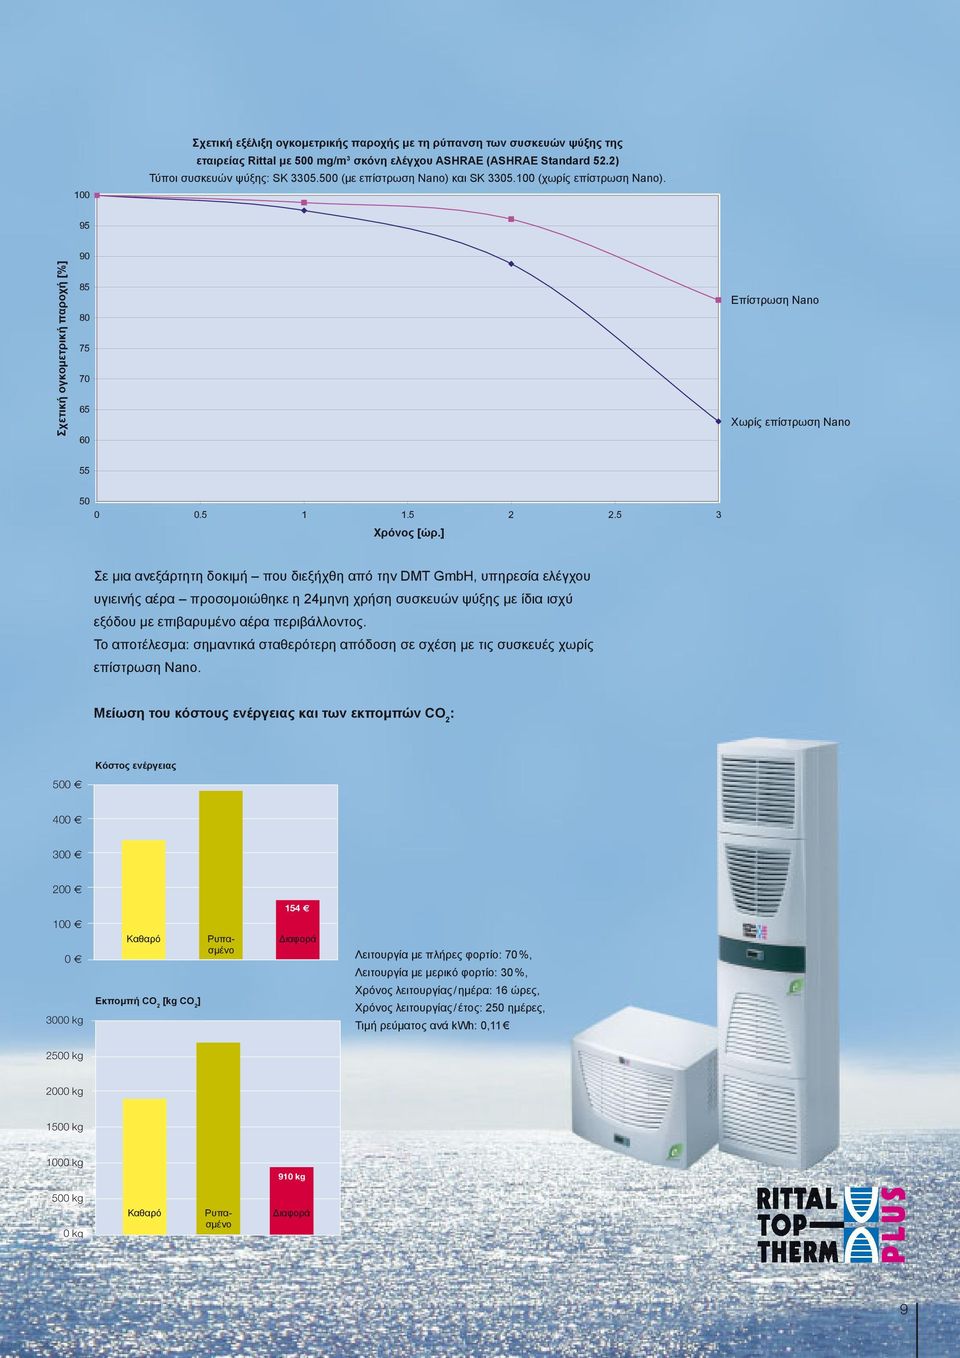 ] Σε μια ανεξάρτητη δοκιμή που διεξήχθη από την DMT GmbH, υπηρεσία ελέγχου υγιεινής αέρα προσομοιώθηκε η 24μηνη χρήση συσκευών ψύξης με ίδια ισχύ εξόδου με επιβαρυμένο αέρα περιβάλλοντος.